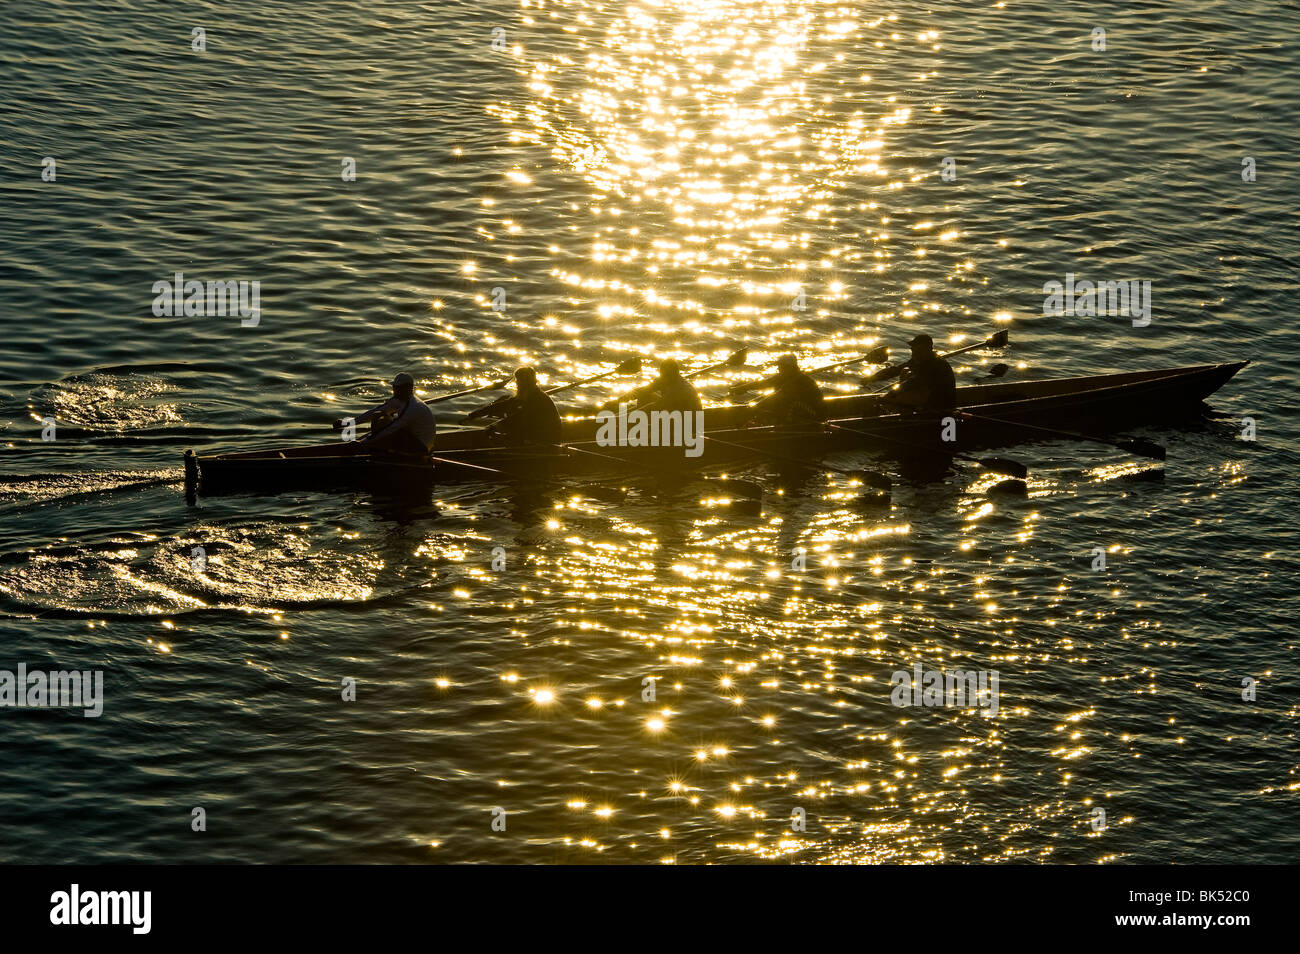 Rematore rower sculler fila sport a remi paddle paddling al tramonto tramonto della luce del sole soleggiato acqua retroilluminazione fiume oro giallo dorato Foto Stock